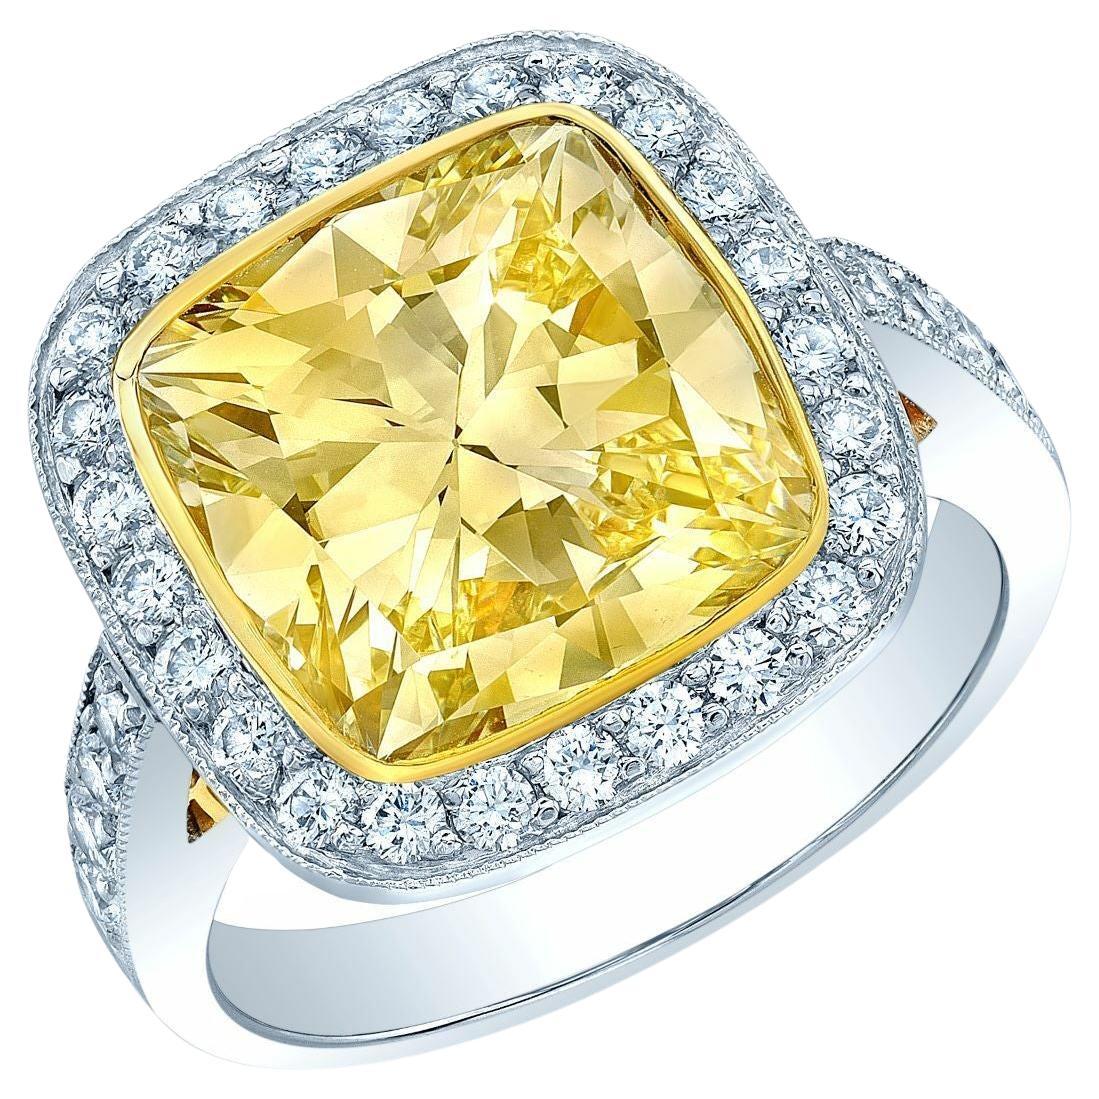 Bague de fiançailles en platine et or jaune 18 carats avec un diamant de taille coussin de couleur jaune très clair et des diamants ronds de taille brillant : Cette bague incorpore à la fois du platine et de l'or jaune 18 carats dans sa conception.